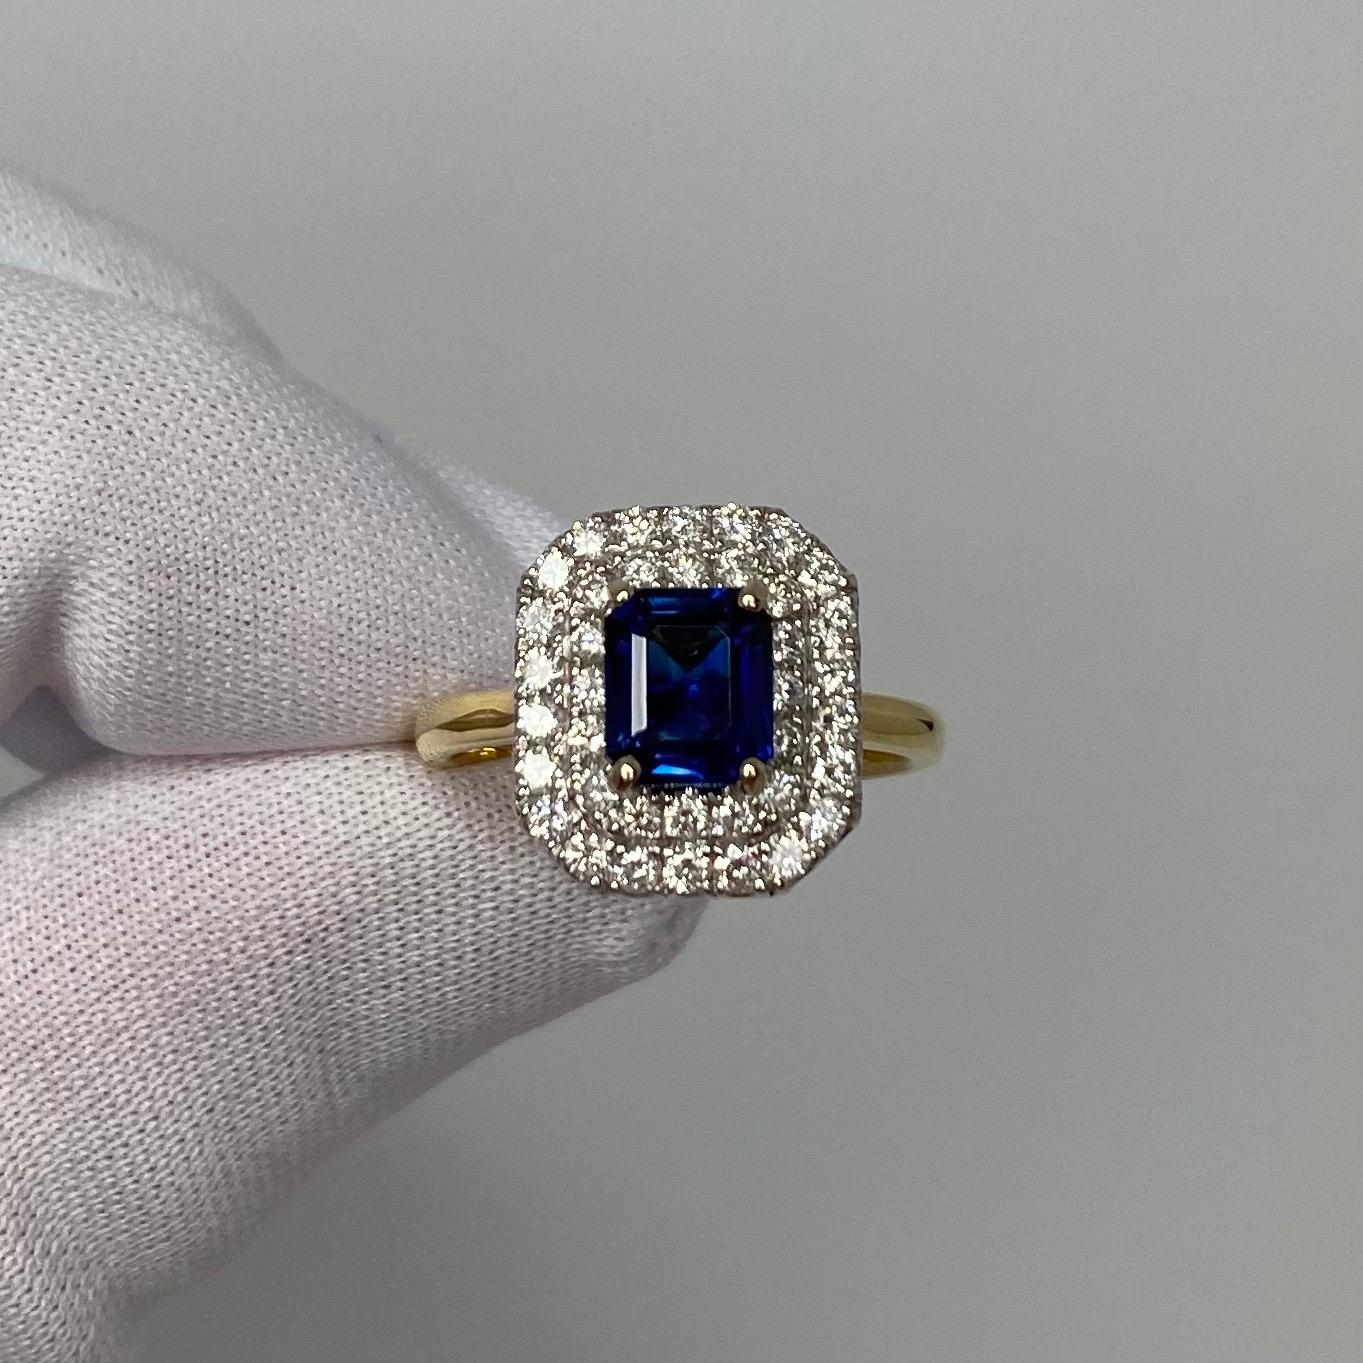 Tiefblauer birmanischer Saphir & Diamant 18K Gold Halo Ring.

Atemberaubender burmesischer Saphir mit 1,45 Karat in der Mitte, mit feiner tiefblauer Farbe und ausgezeichnetem Smaragdschliff. Auch hat eine ausgezeichnete Klarheit mit nur einige